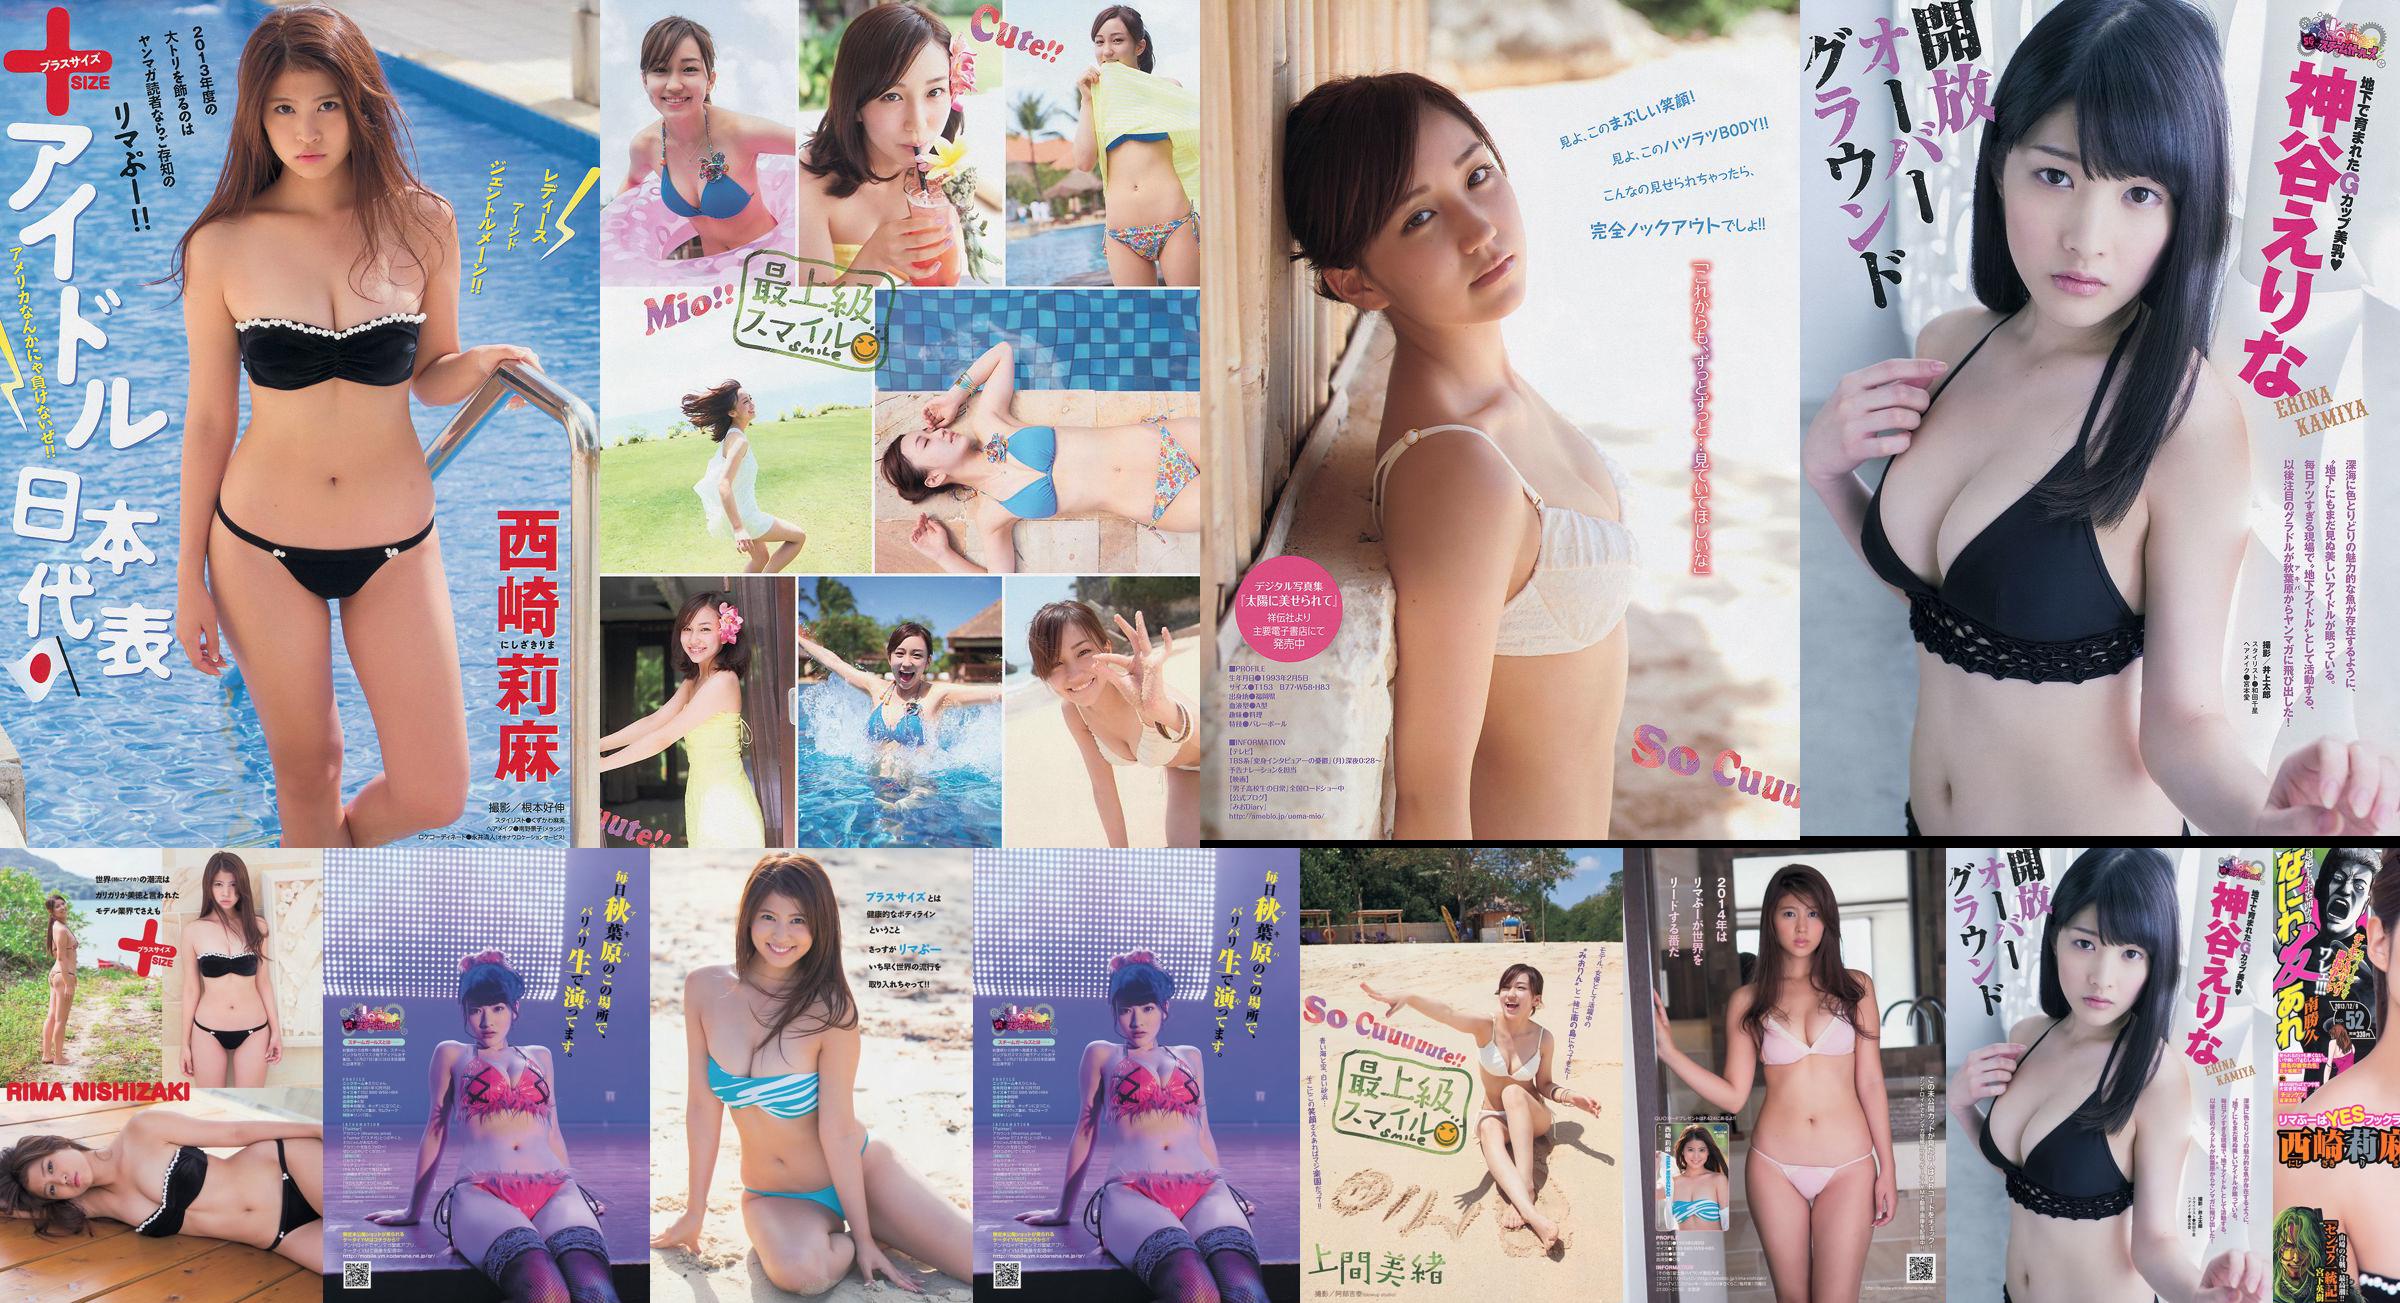 [Revista Young] Rima Nishizaki Mio Uema Erina Kamiya 2013 No.52 Foto Moshi No.d42c6f Página 1